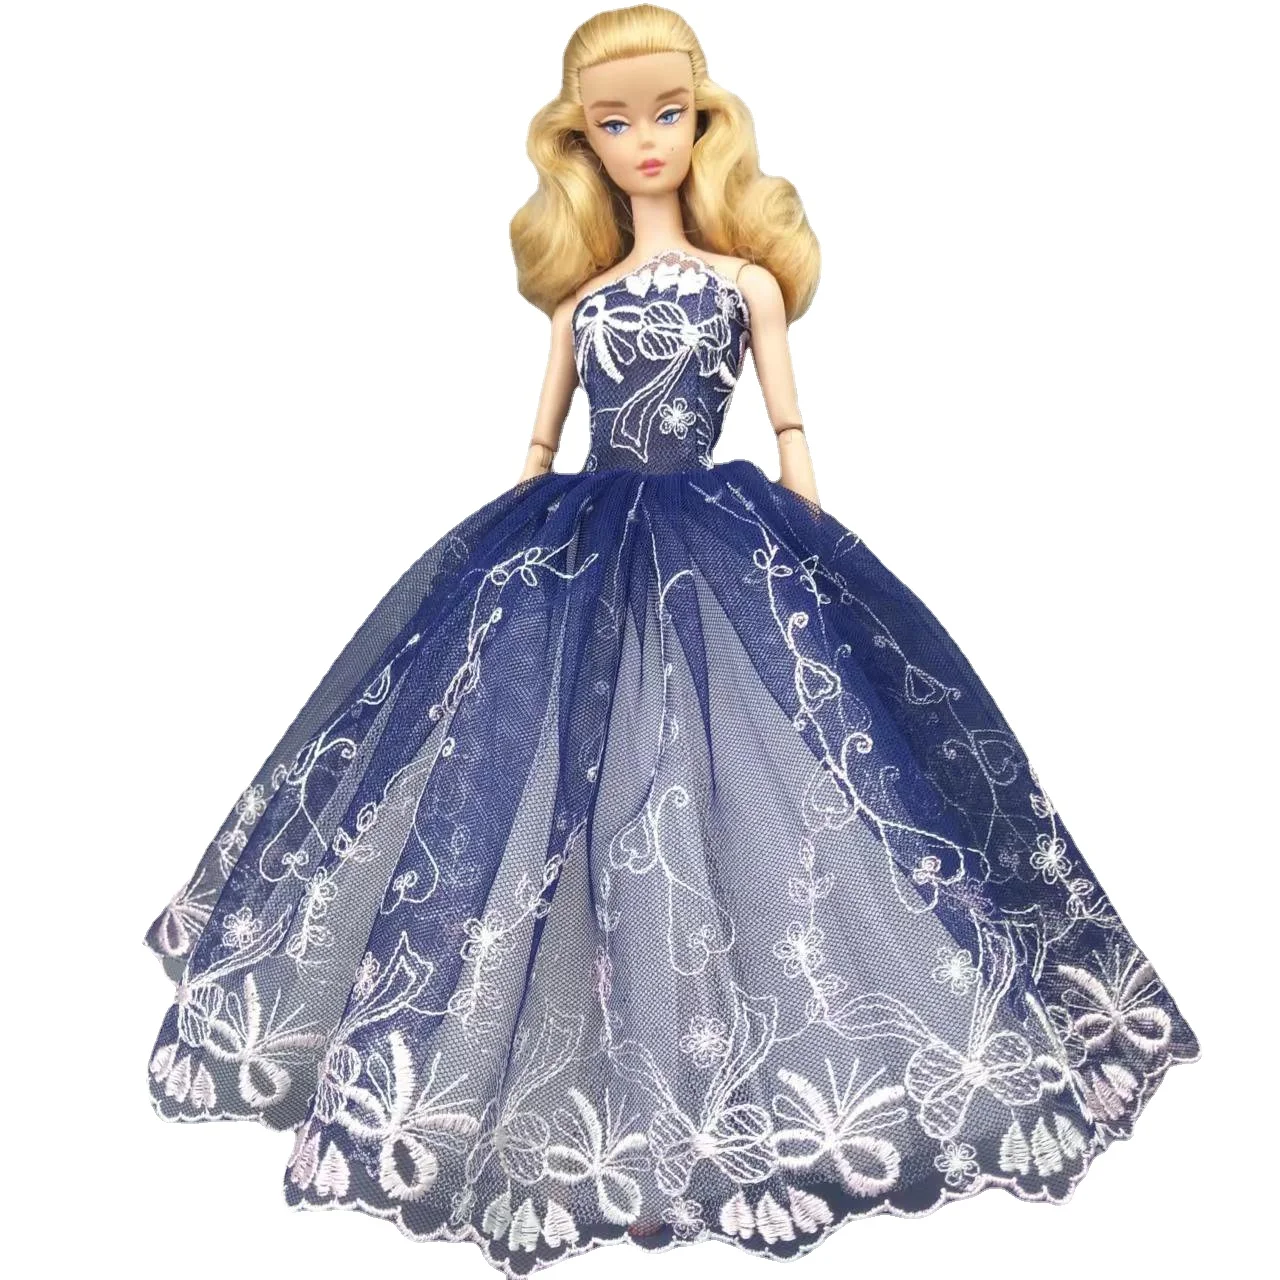 1/6 oyuncak bebek giysileri Koyu Mavi Çiçek düğün elbisesi Barbie Aksesuarları barbie bebek Giyim Prenses Parti Kıyafeti Kıyafet 11.5